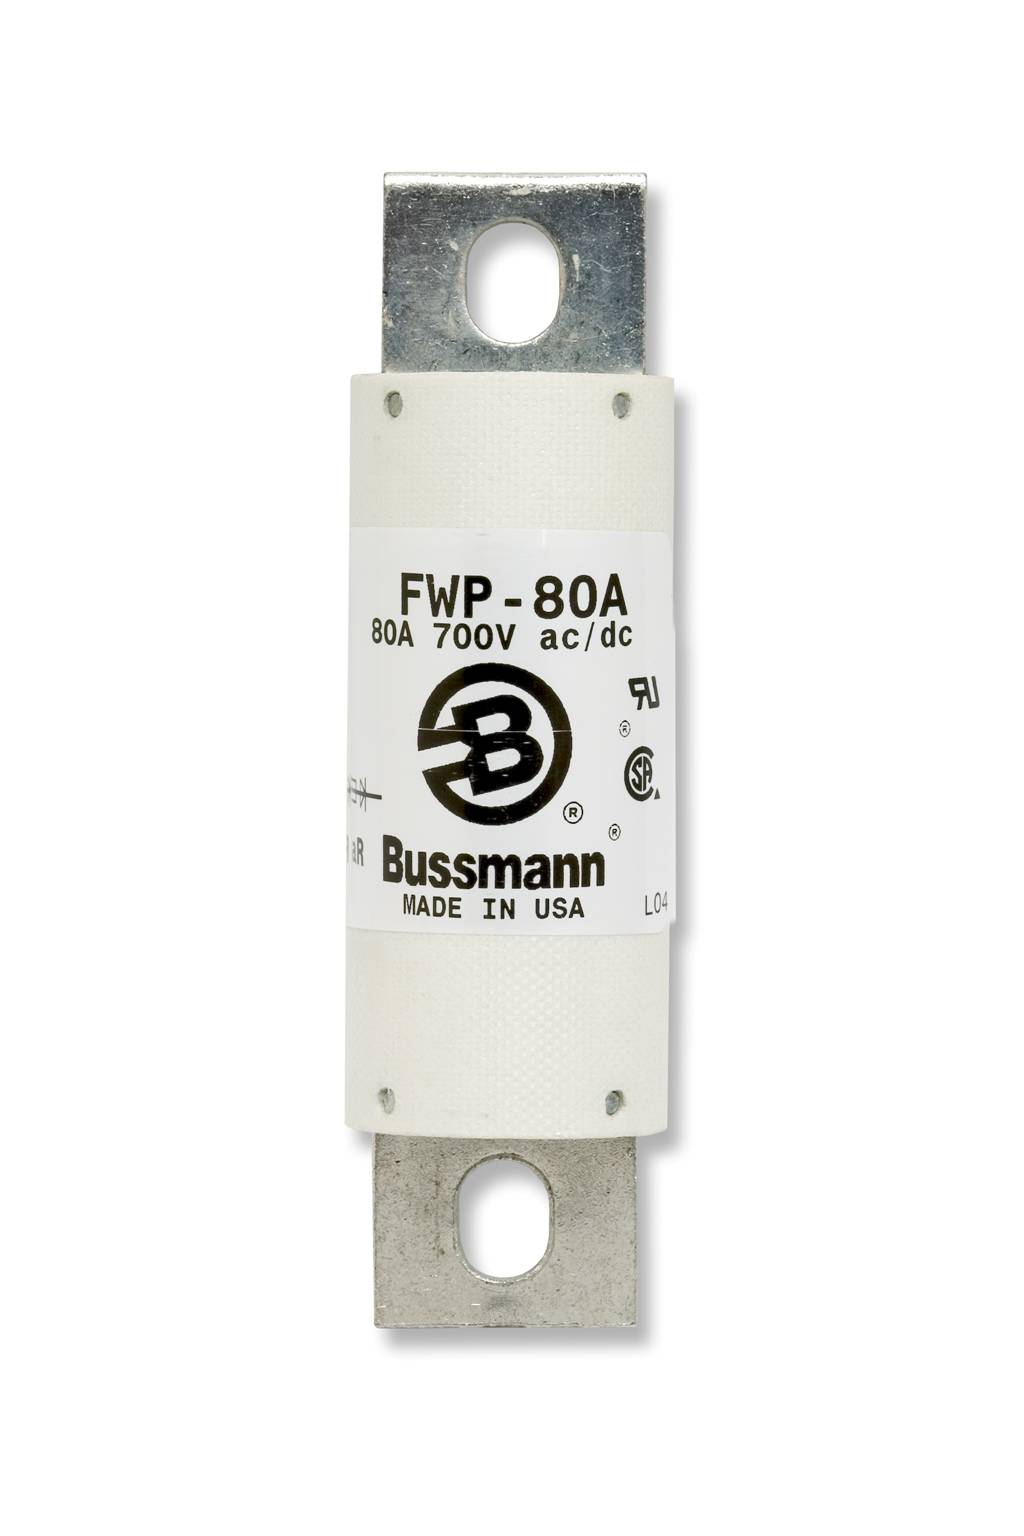 Part# FWP-400A  Manufacturer BUSSMANN  Part Type 700 Volt Fuse